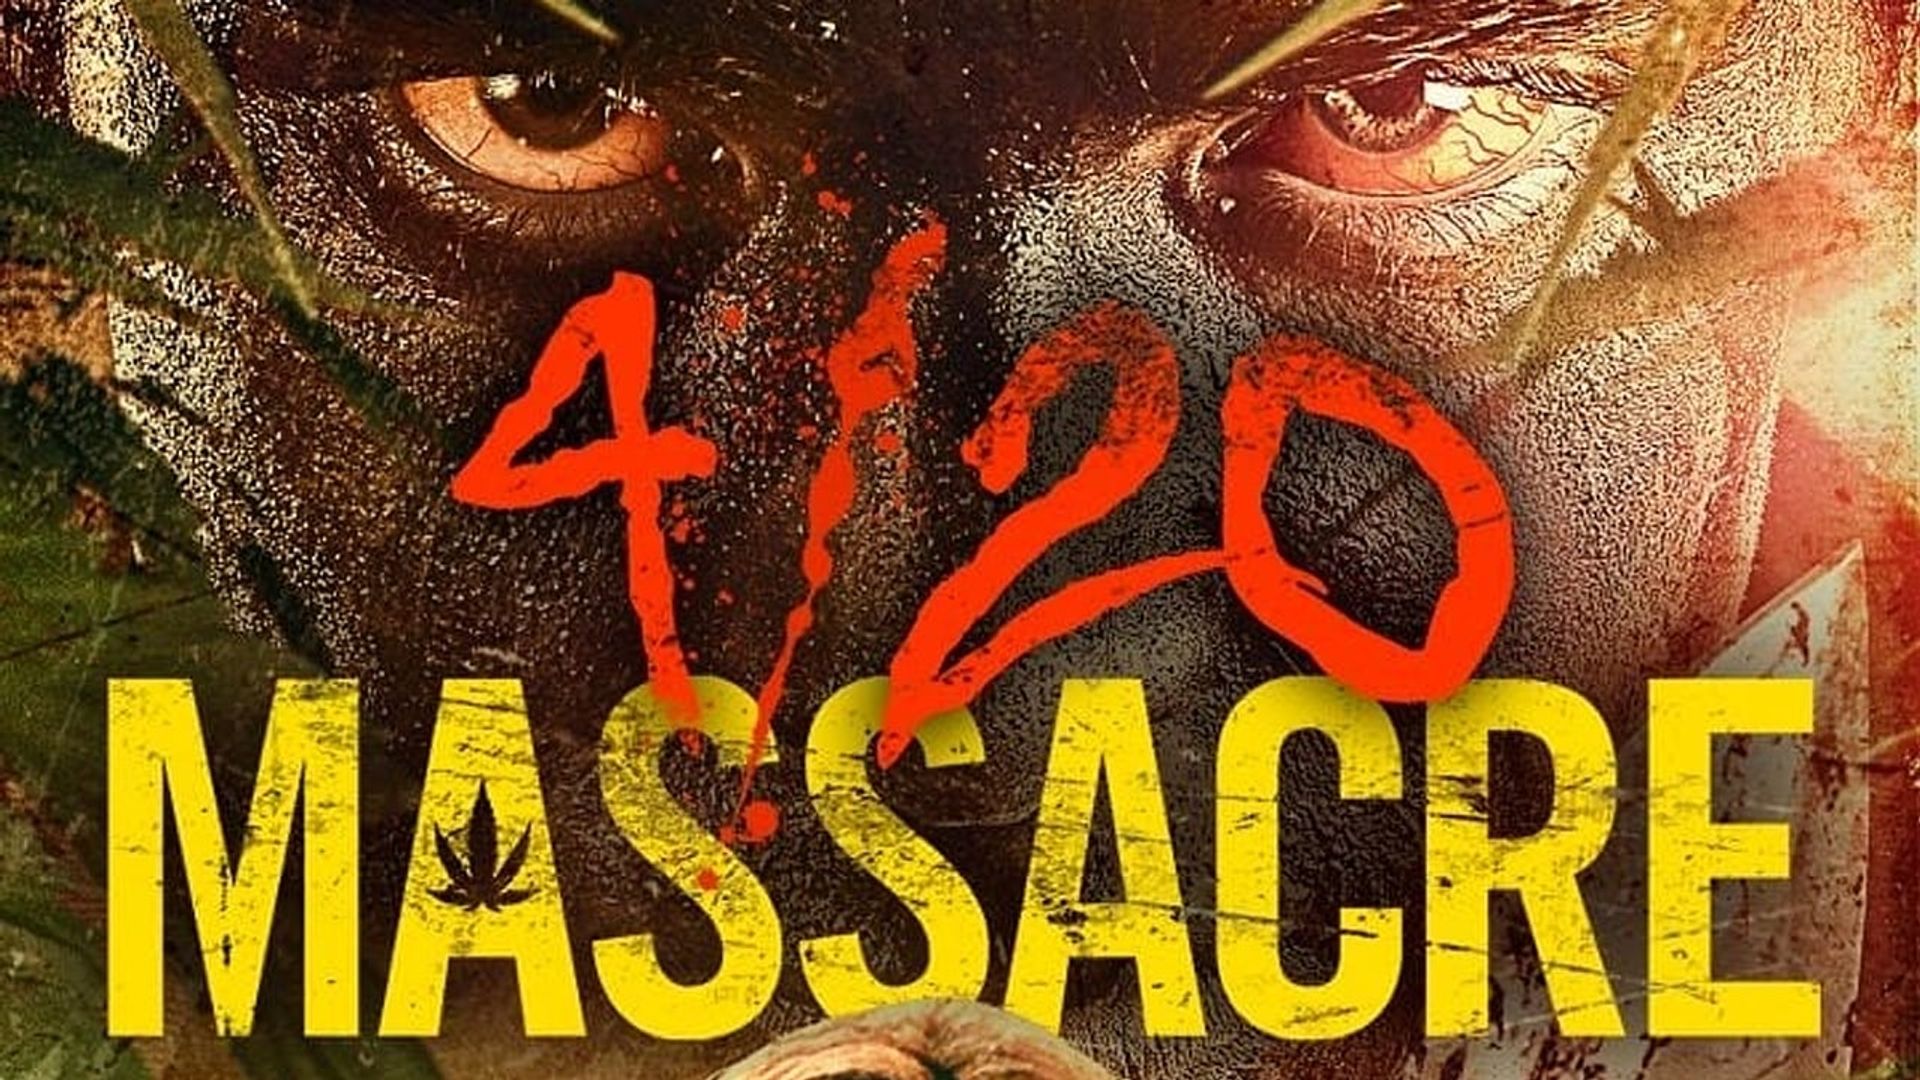 4/20 Massacre background